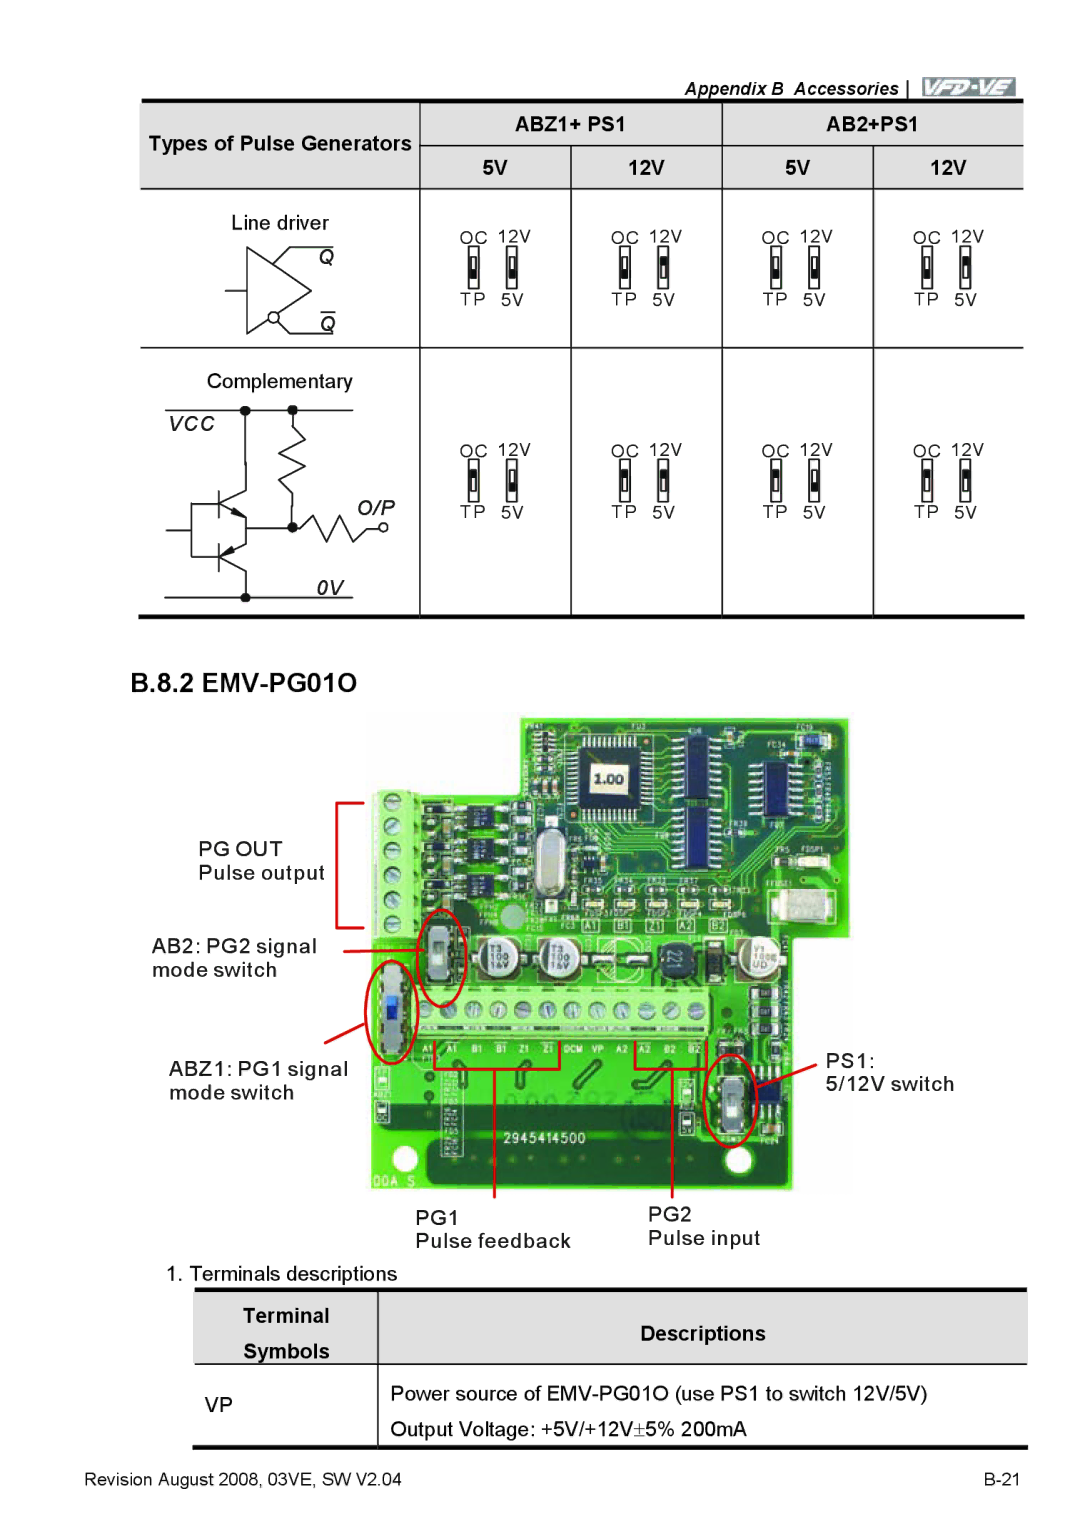 Delta Electronics VFD-VE Series manual EMV-PG01O, Types of Pulse Generators, Pg Out, Terminal Descriptions Symbols 